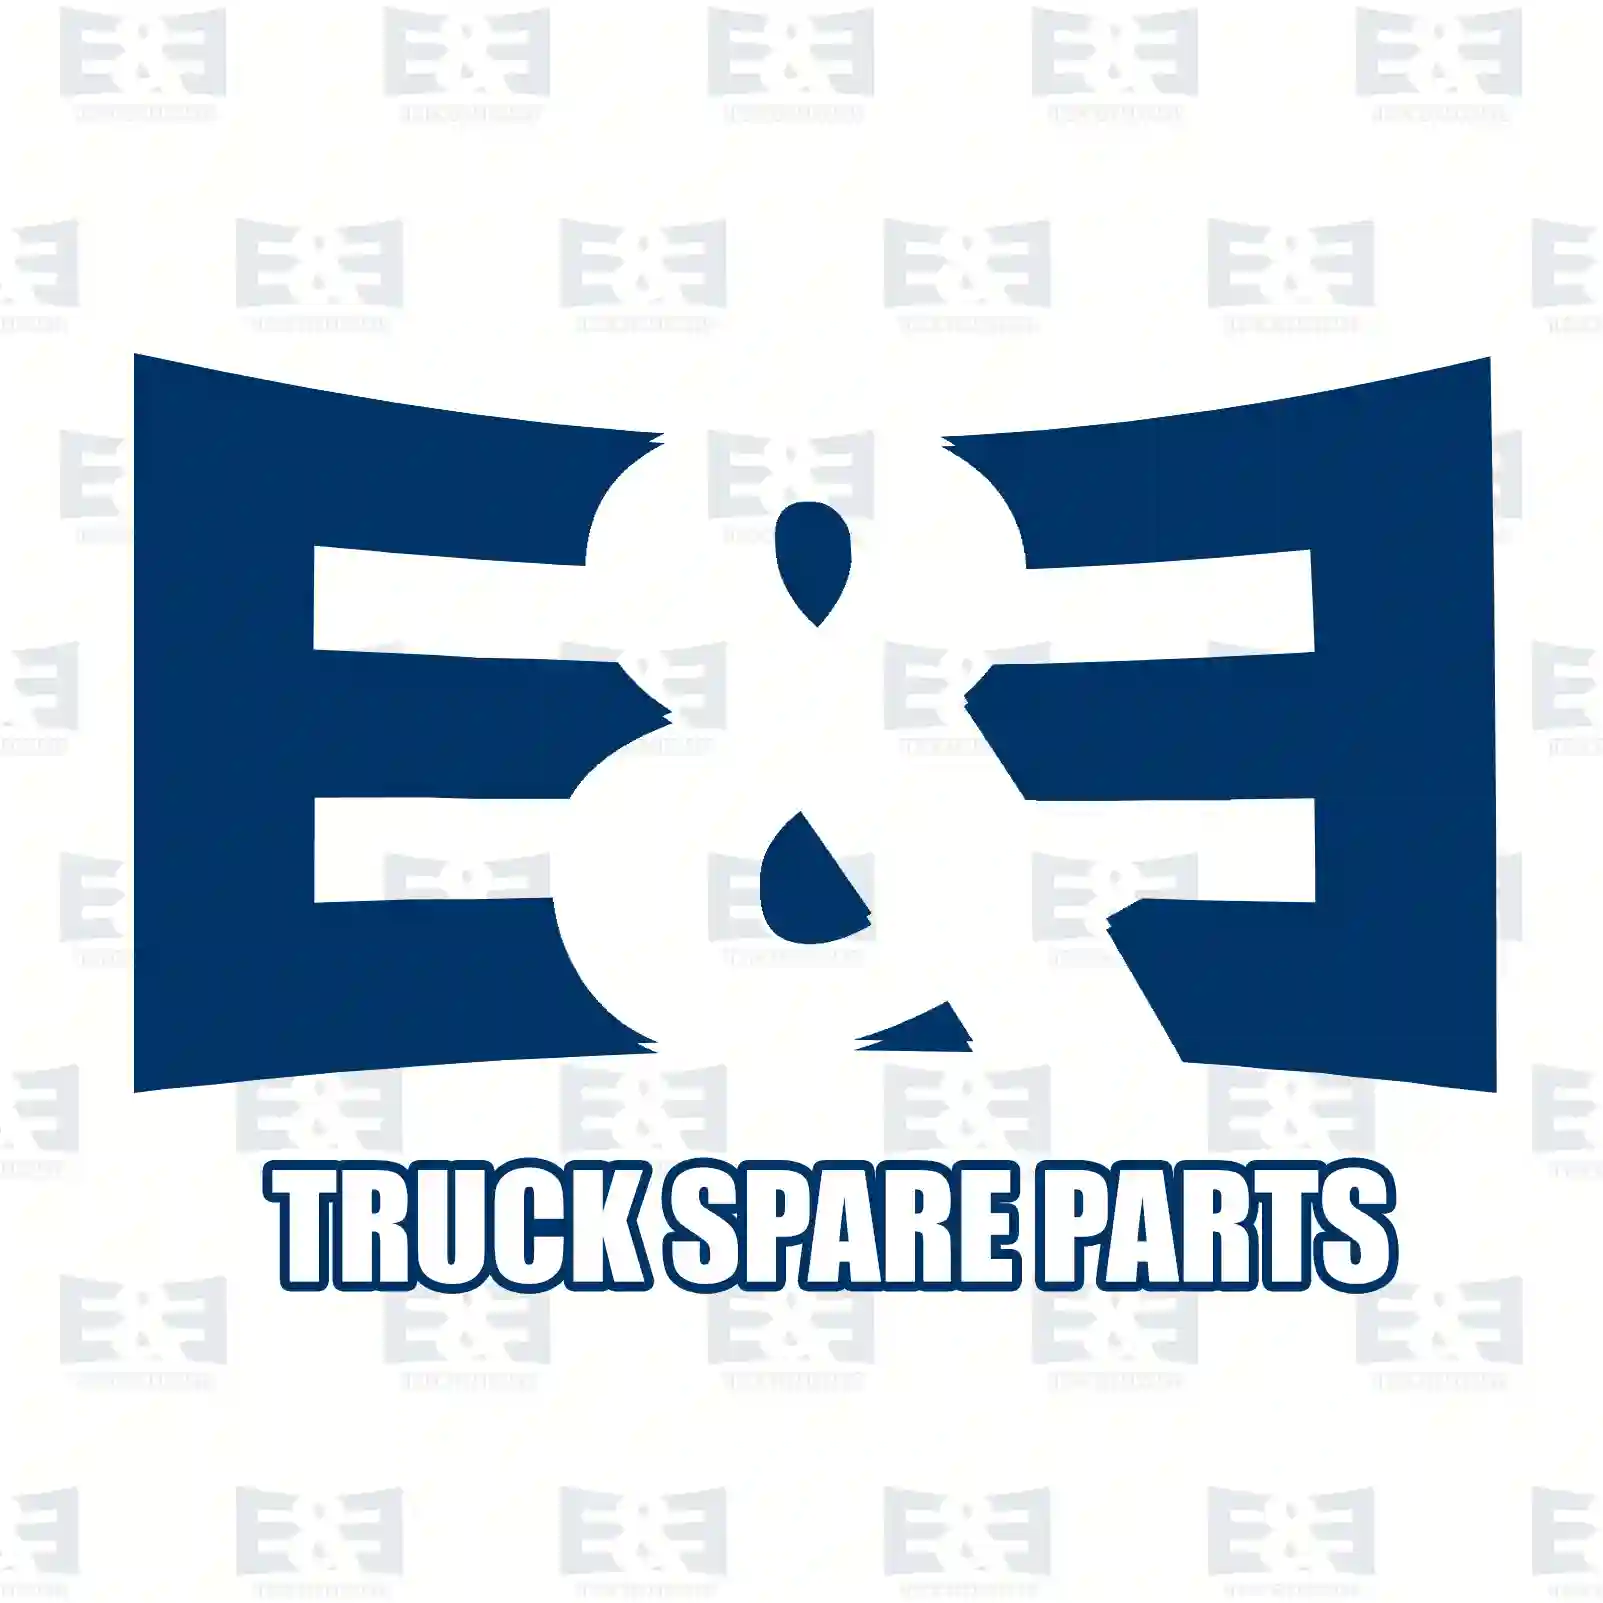 Control cable, Switching, 2E2277679, 7420879516, 20879 ||  2E2277679 E&E Truck Spare Parts | Truck Spare Parts, Auotomotive Spare Parts Control cable, Switching, 2E2277679, 7420879516, 20879 ||  2E2277679 E&E Truck Spare Parts | Truck Spare Parts, Auotomotive Spare Parts